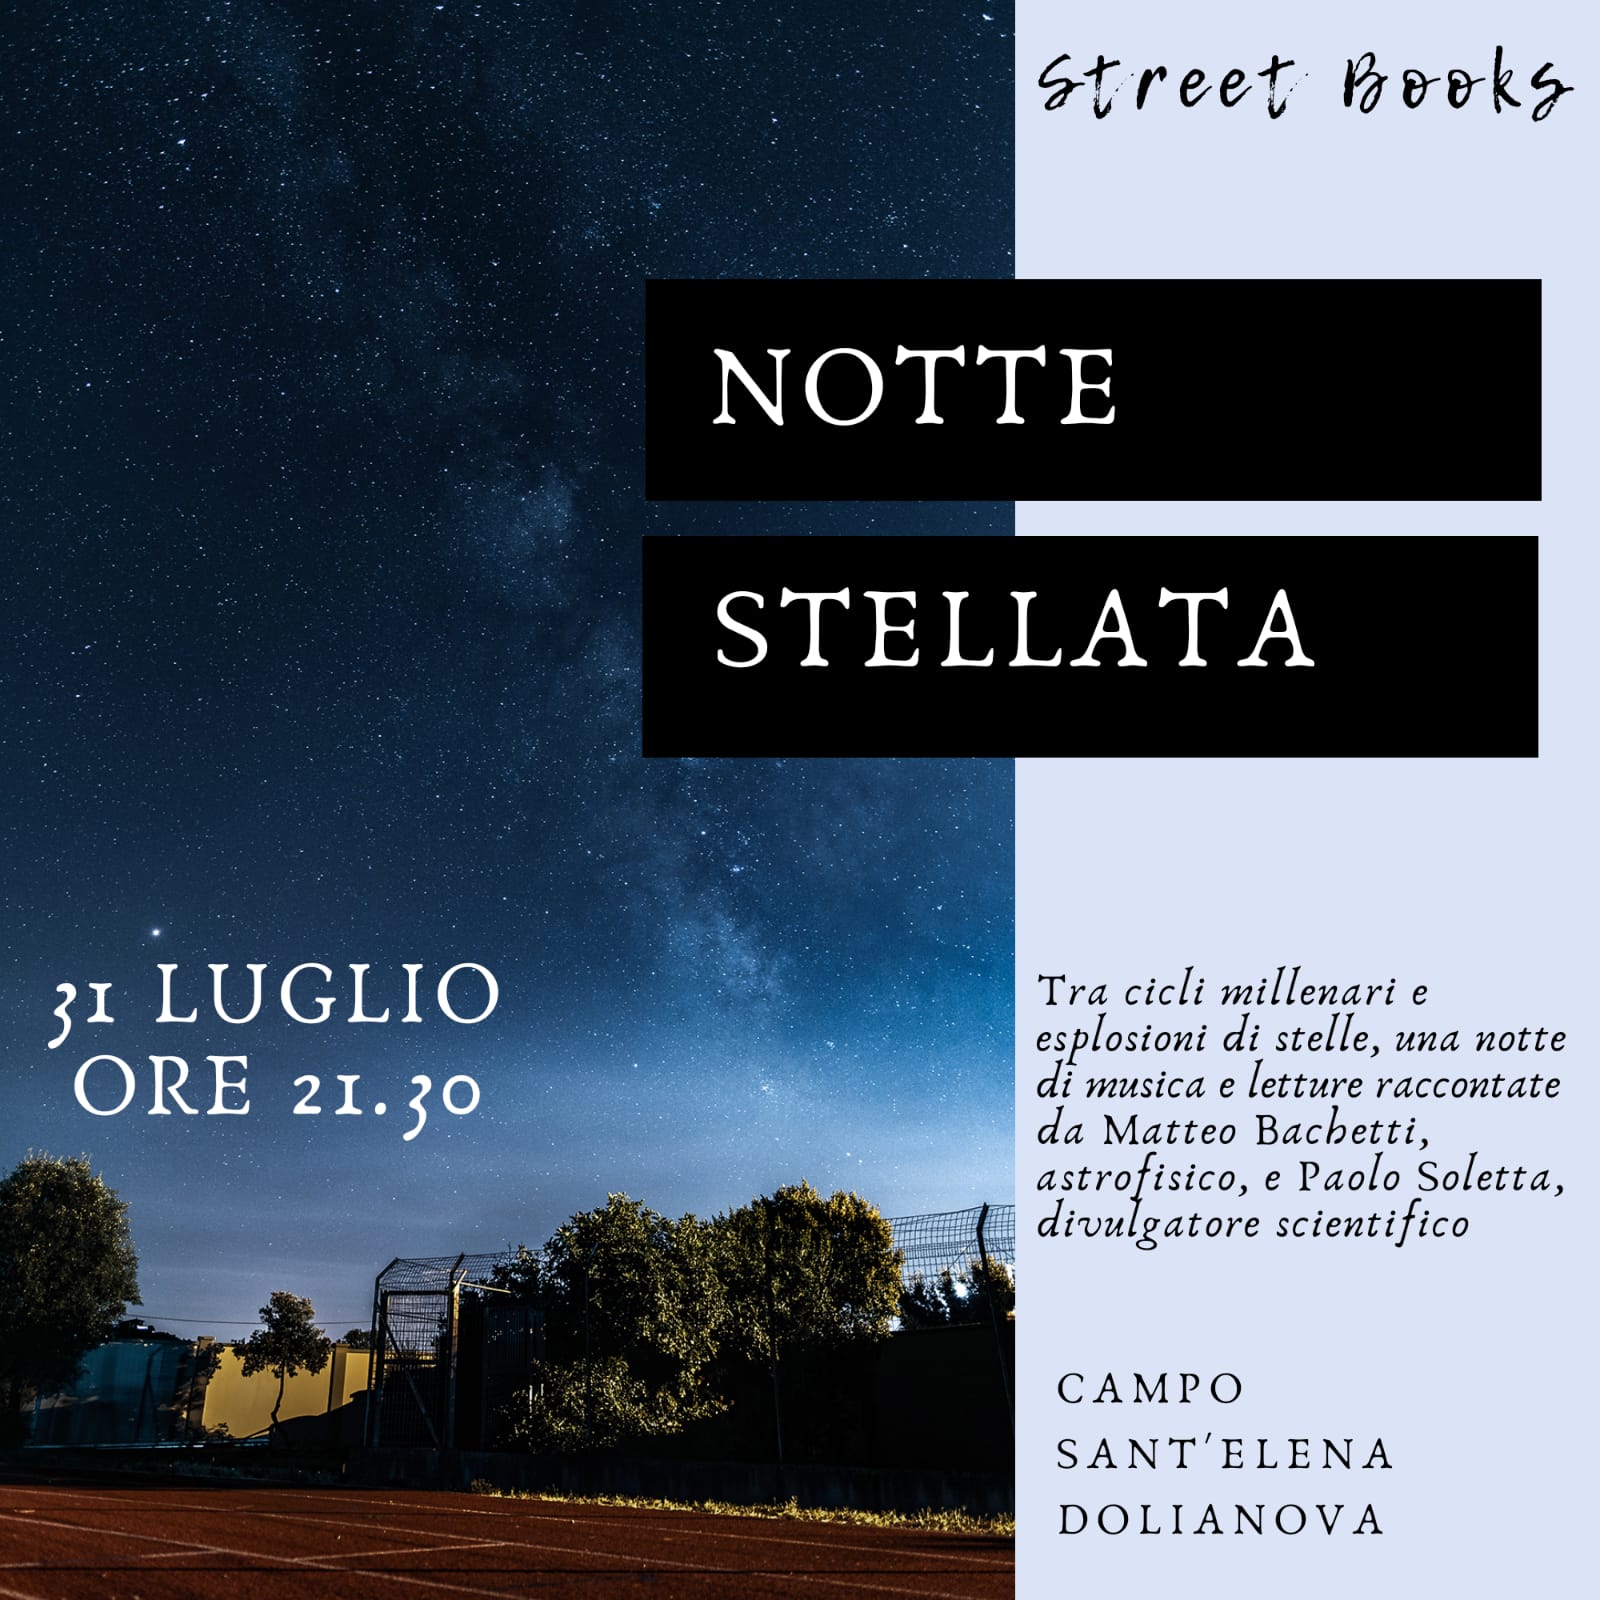 Street Books presenta: NOTTE STELLATA 31 luglio ore 21.30 Campo Sant'Elena - Dolianova